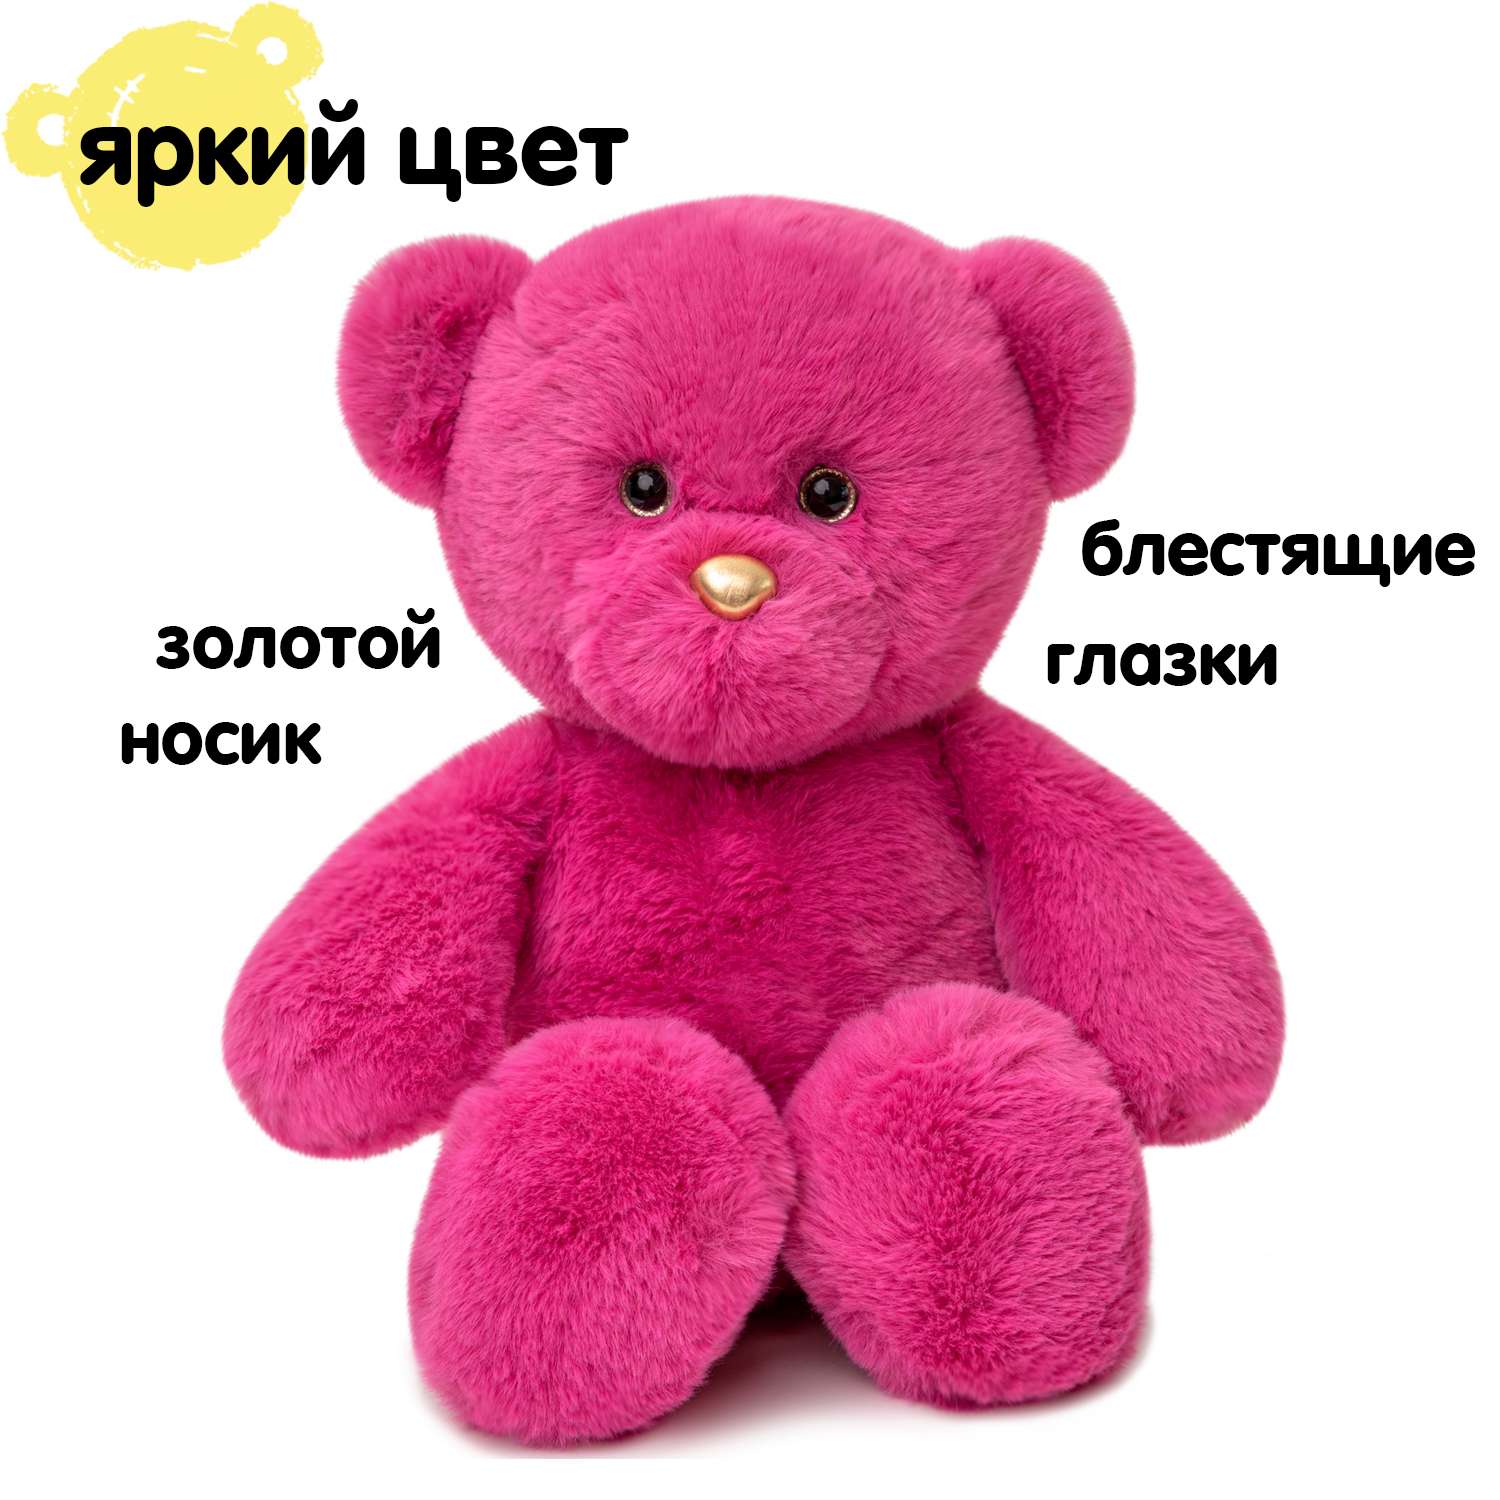 Мягкая игрушка KULT of toys Плюшевый мишка 35 см цвет розовый - фото 2